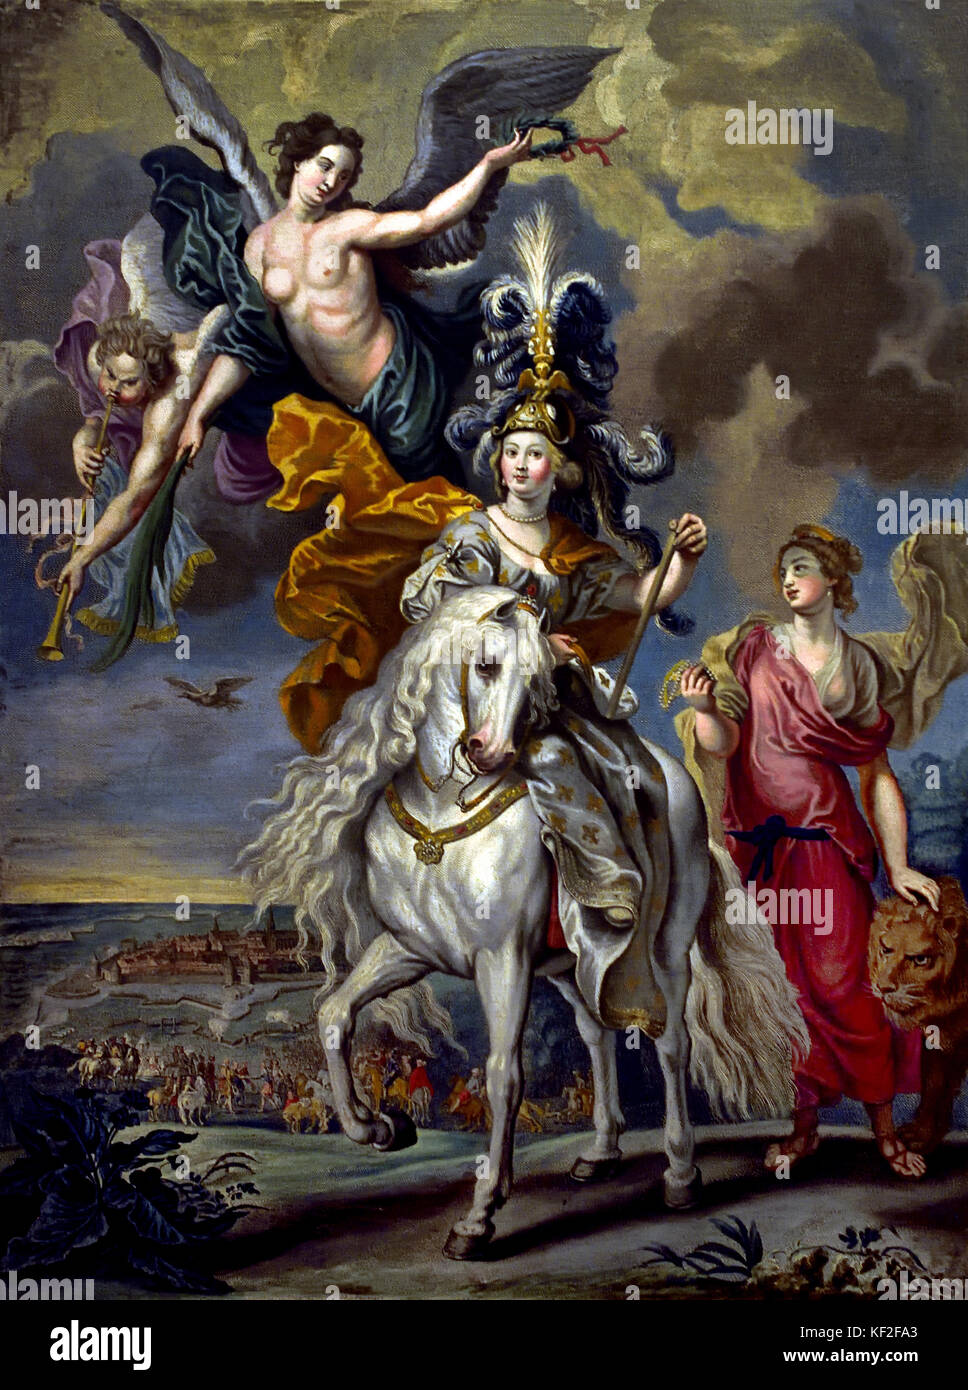 Le Regent militantes, la victoire à Juliers - Le cycle de Marie de Médicis de Peter Paul Rubens, Belgique (veuve du Roi Henri IV de France) Banque D'Images